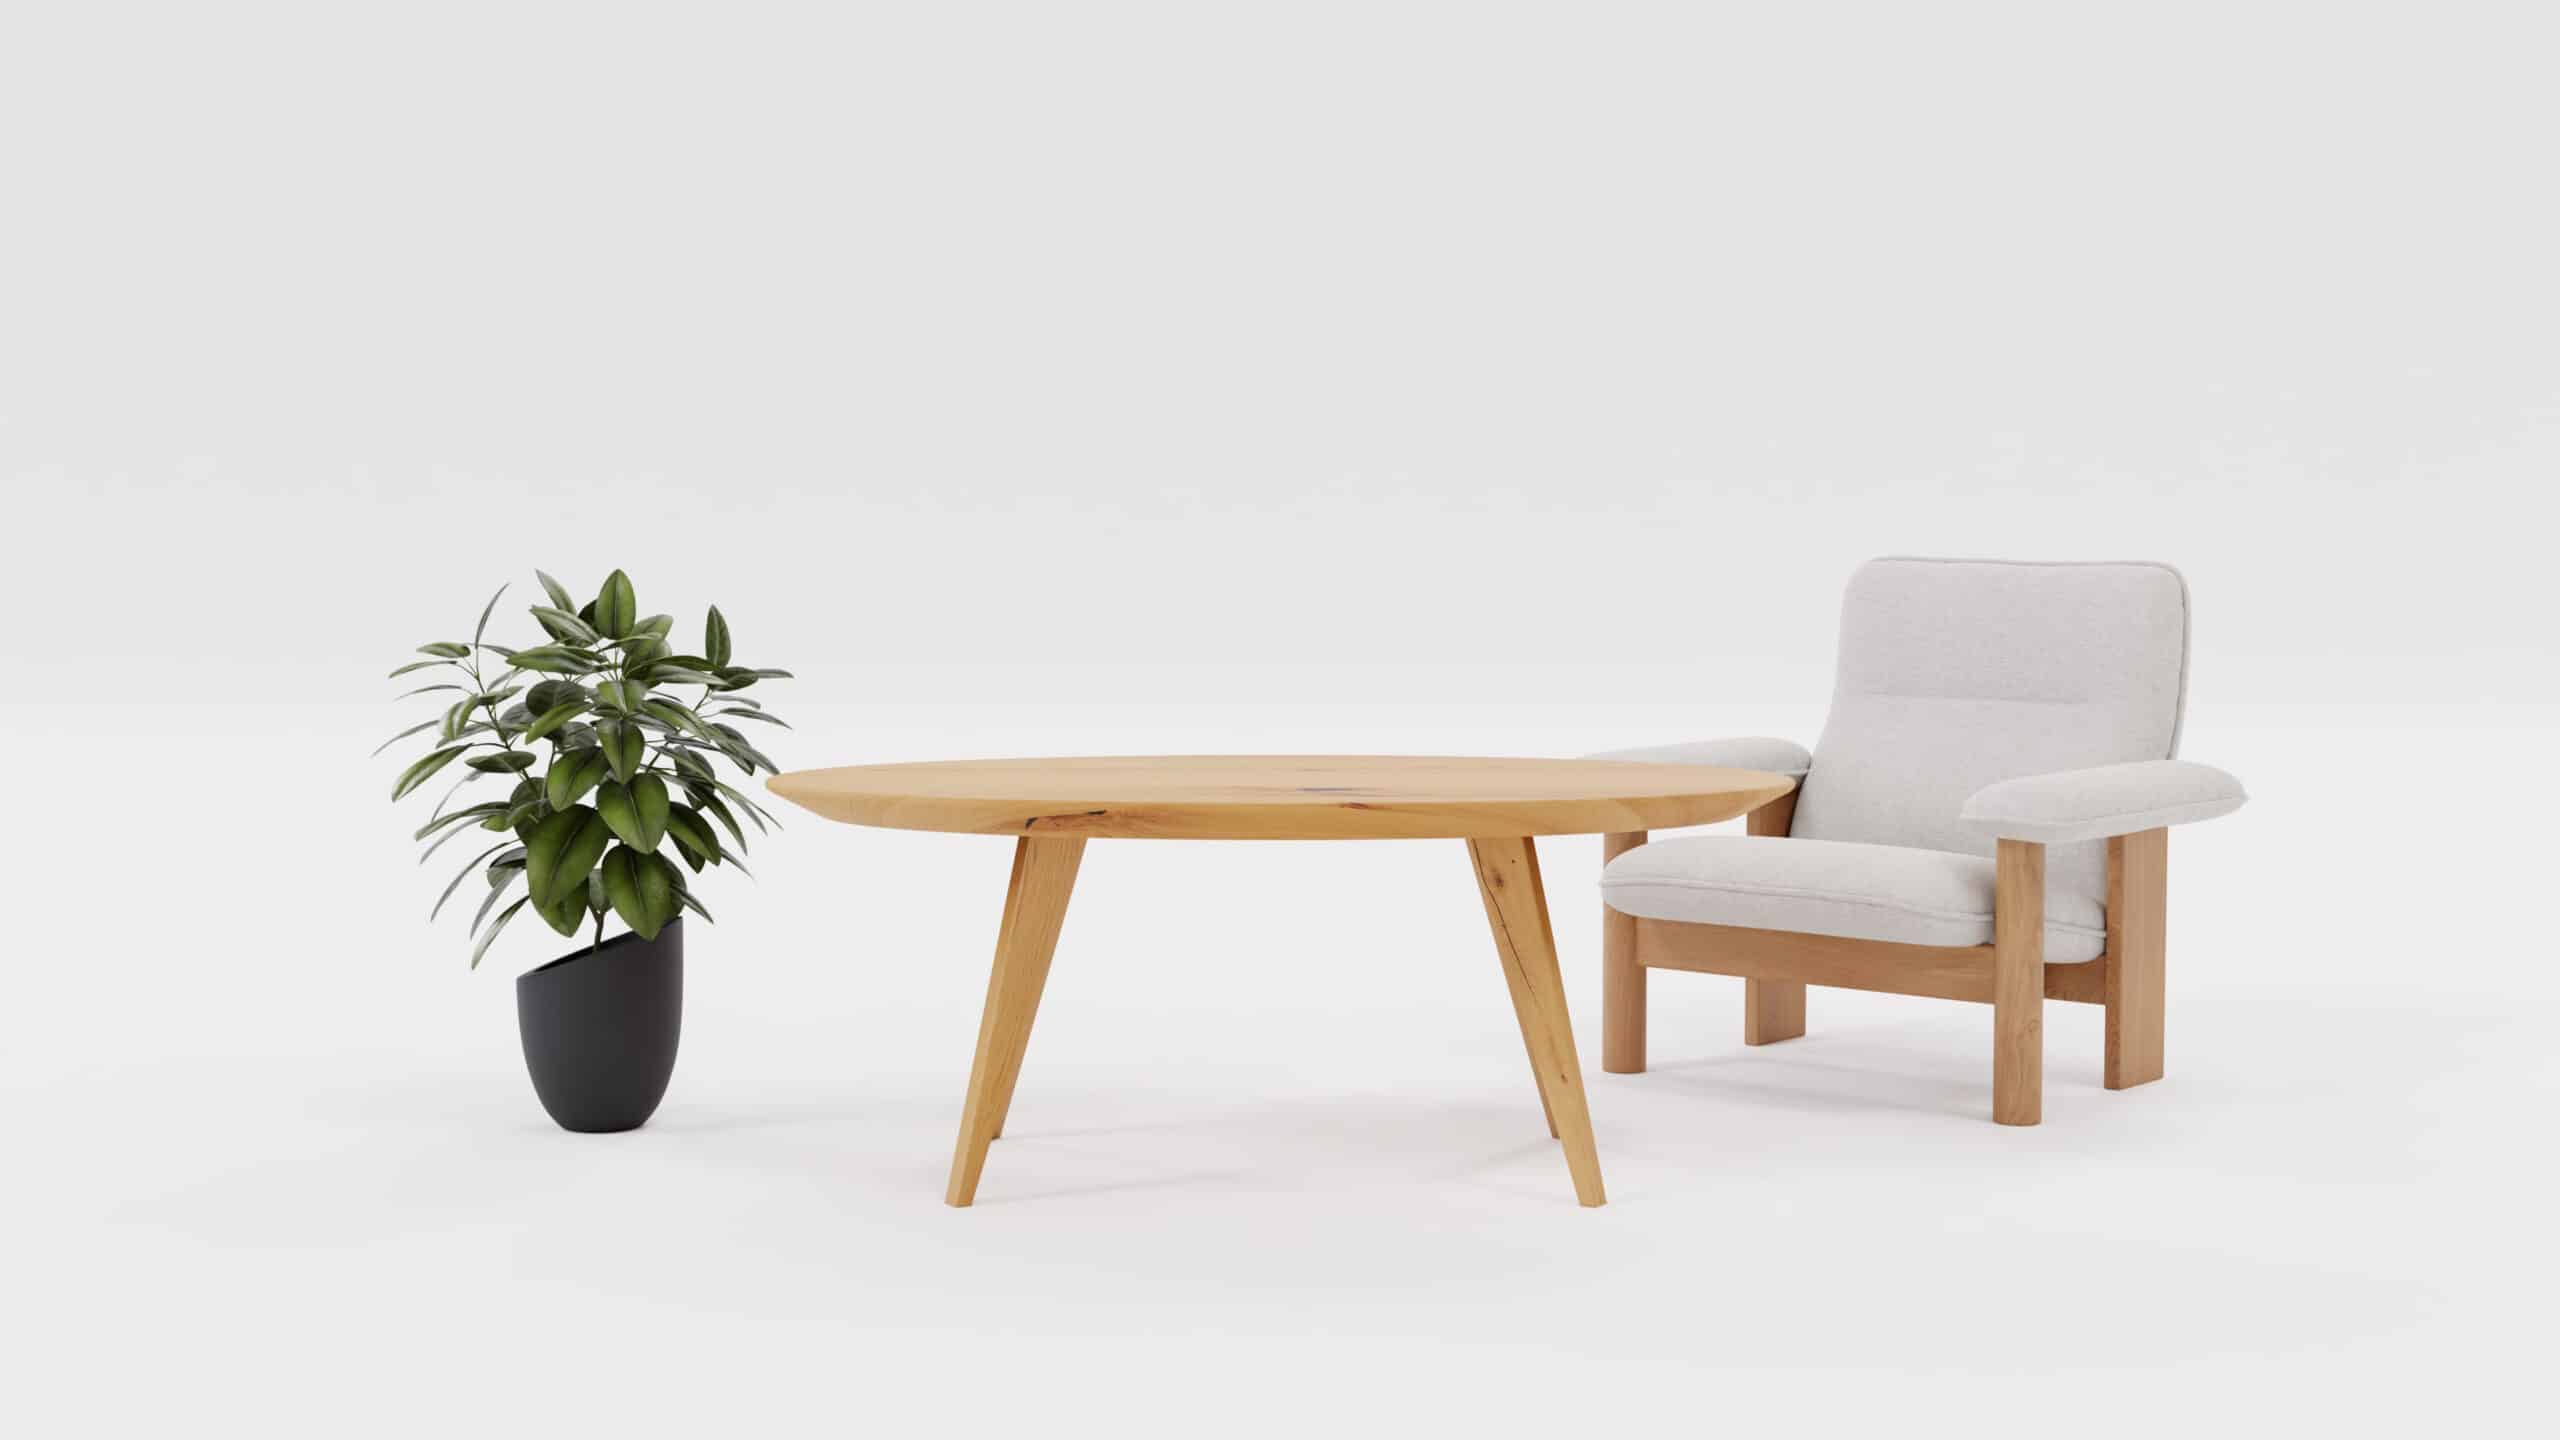 Owalny stół drewniany Elips, obok kwiat i krzesło